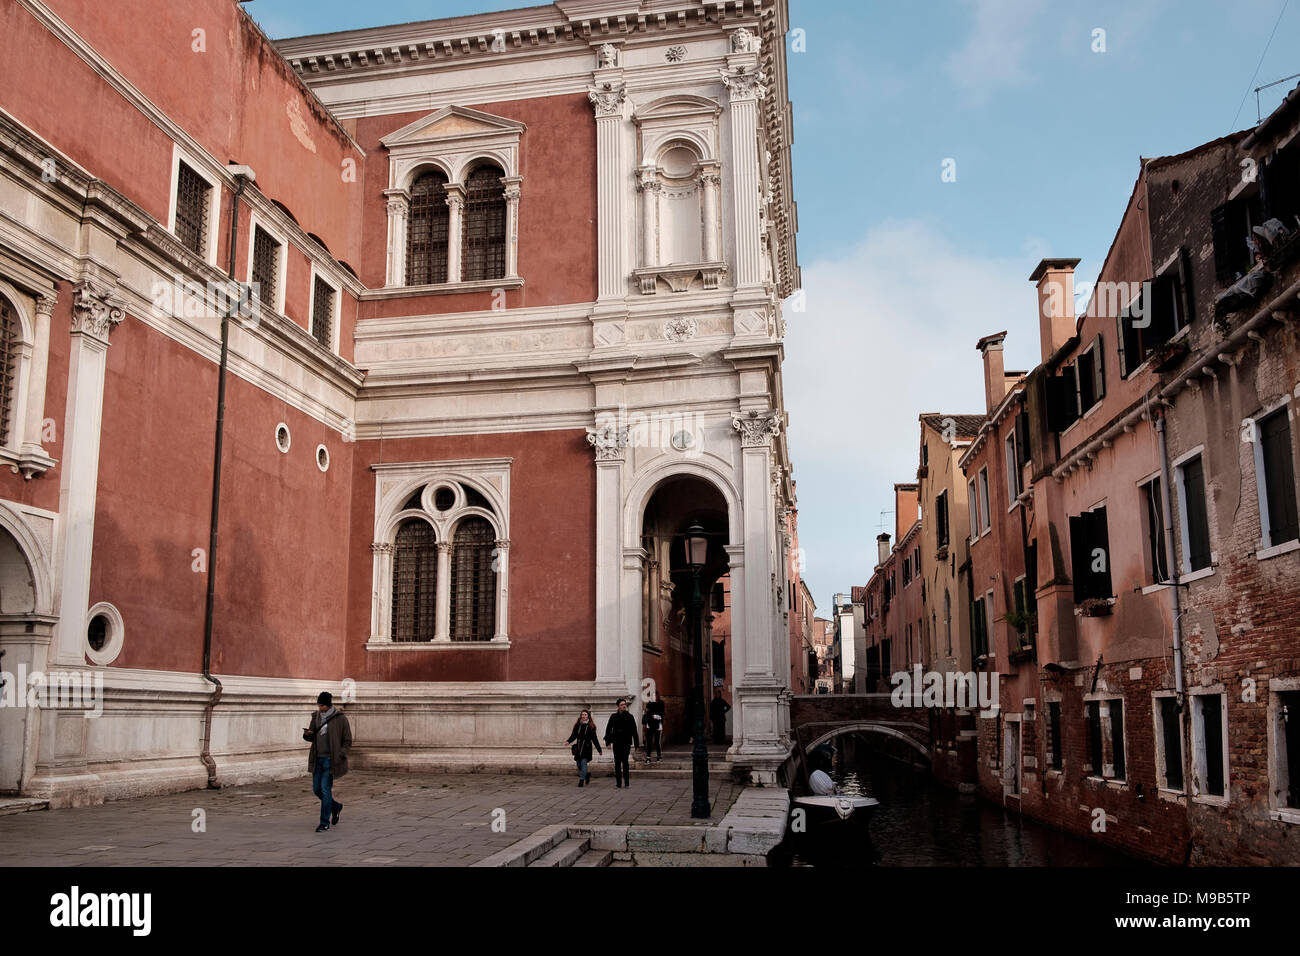 Scuola Grande di San Rocco is a art museum in Dorsoduro, Venice Stock Photo